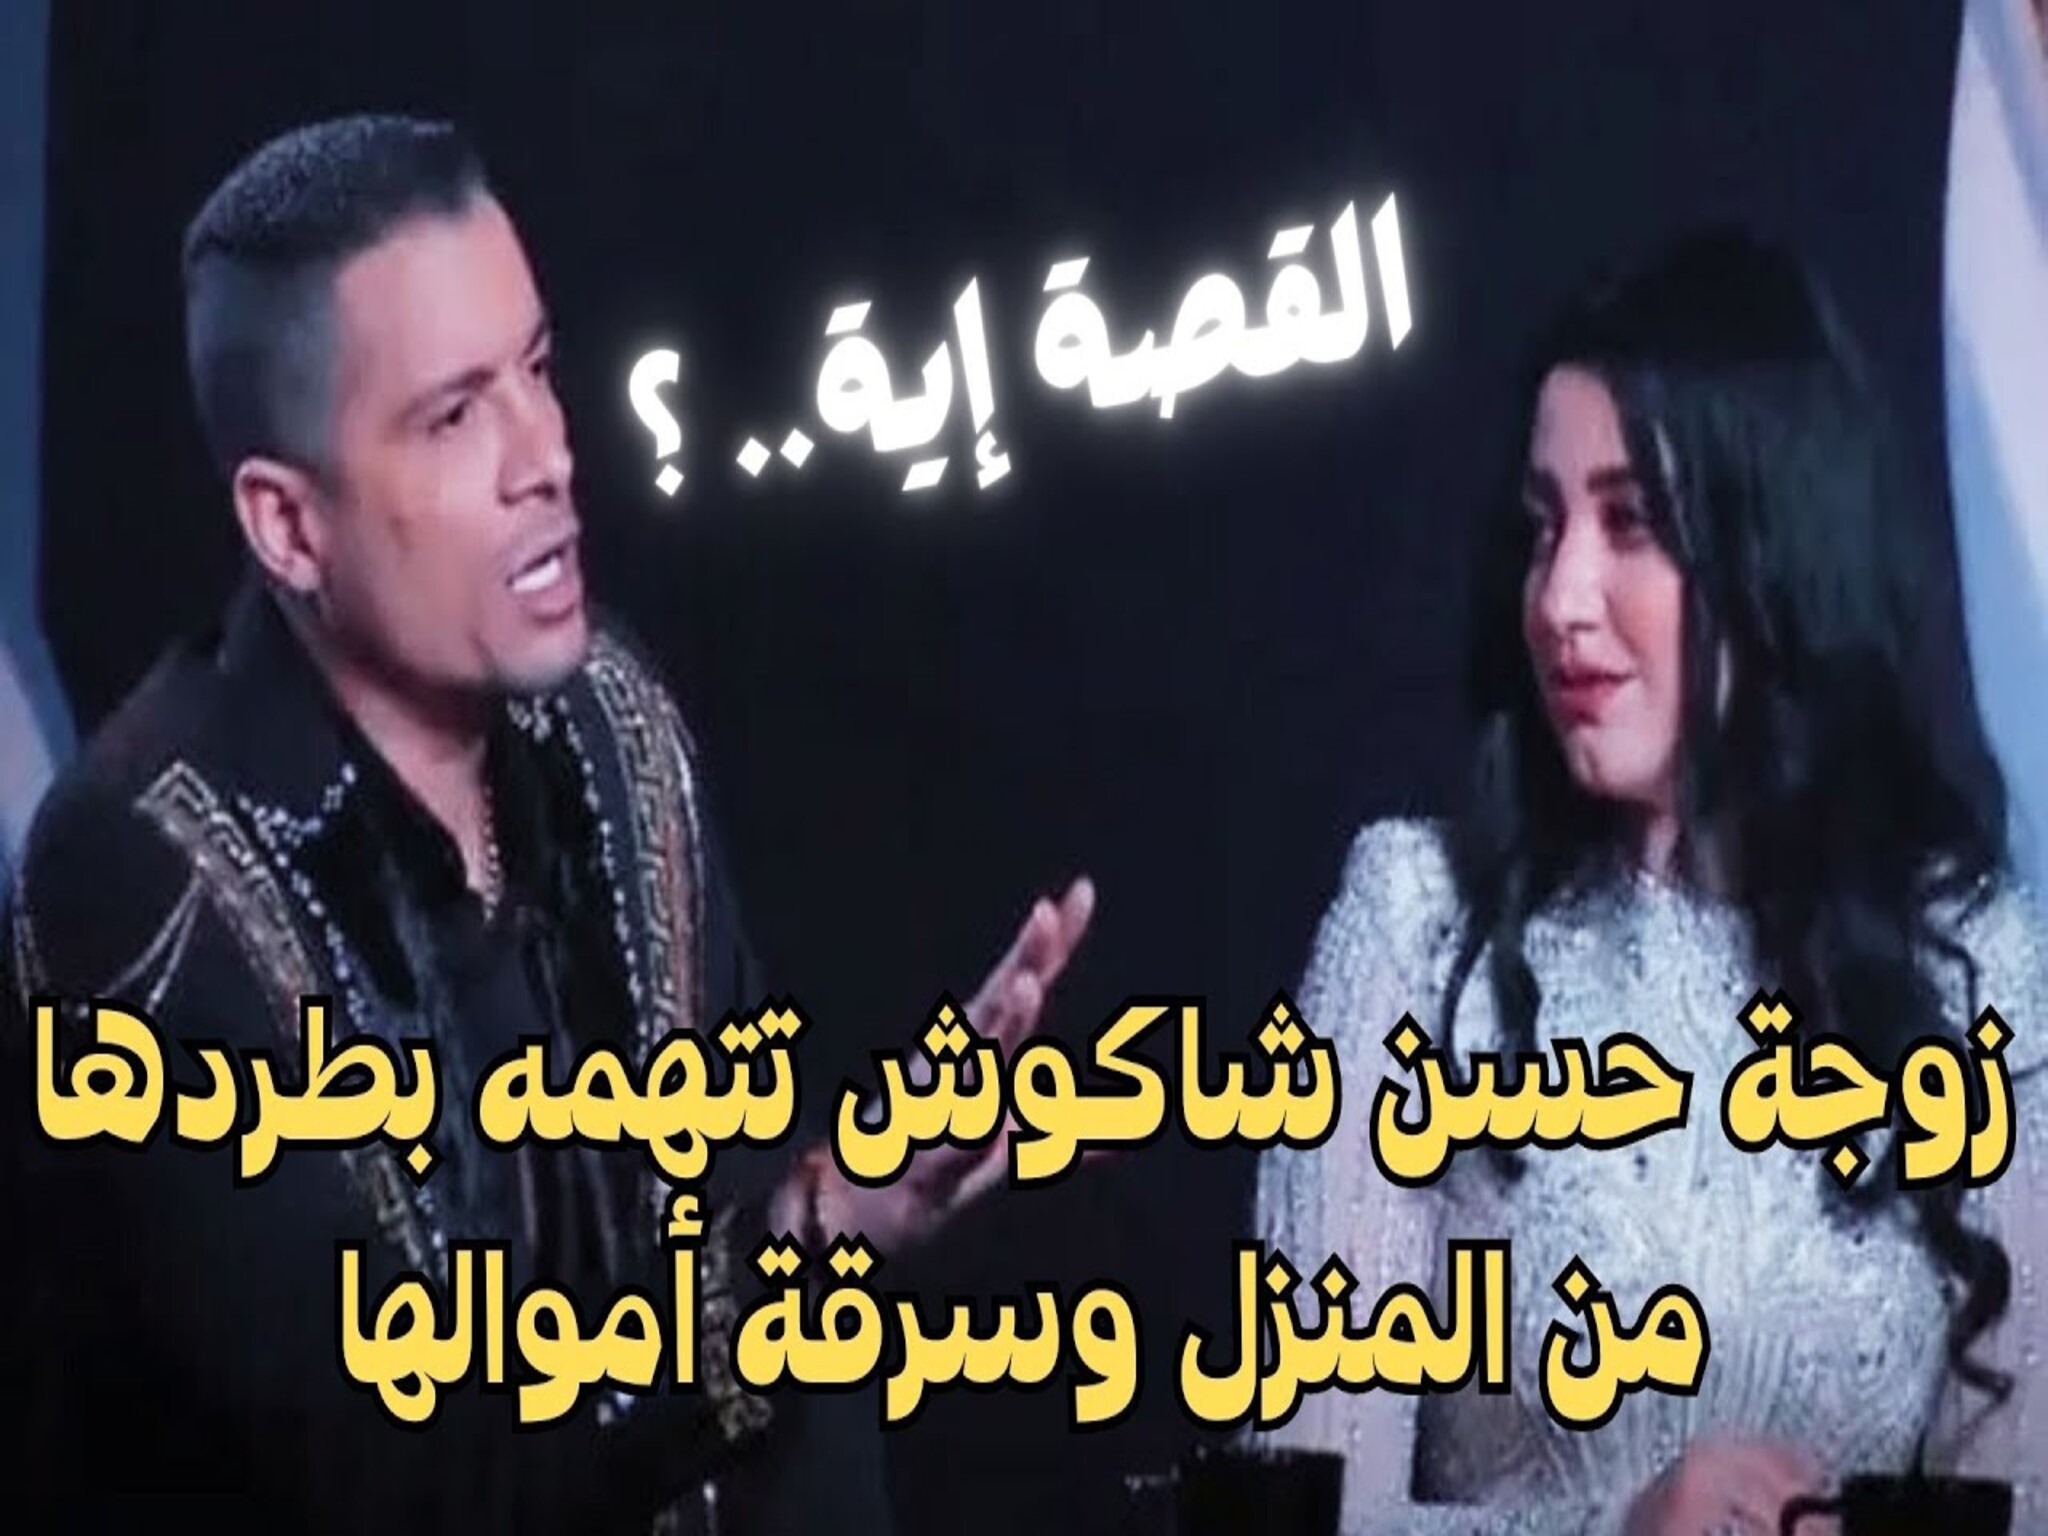 "طردني وسرق شبكتي"...حسن شاكوش يطرد بنت الجيران بعد 55 يوم زواج